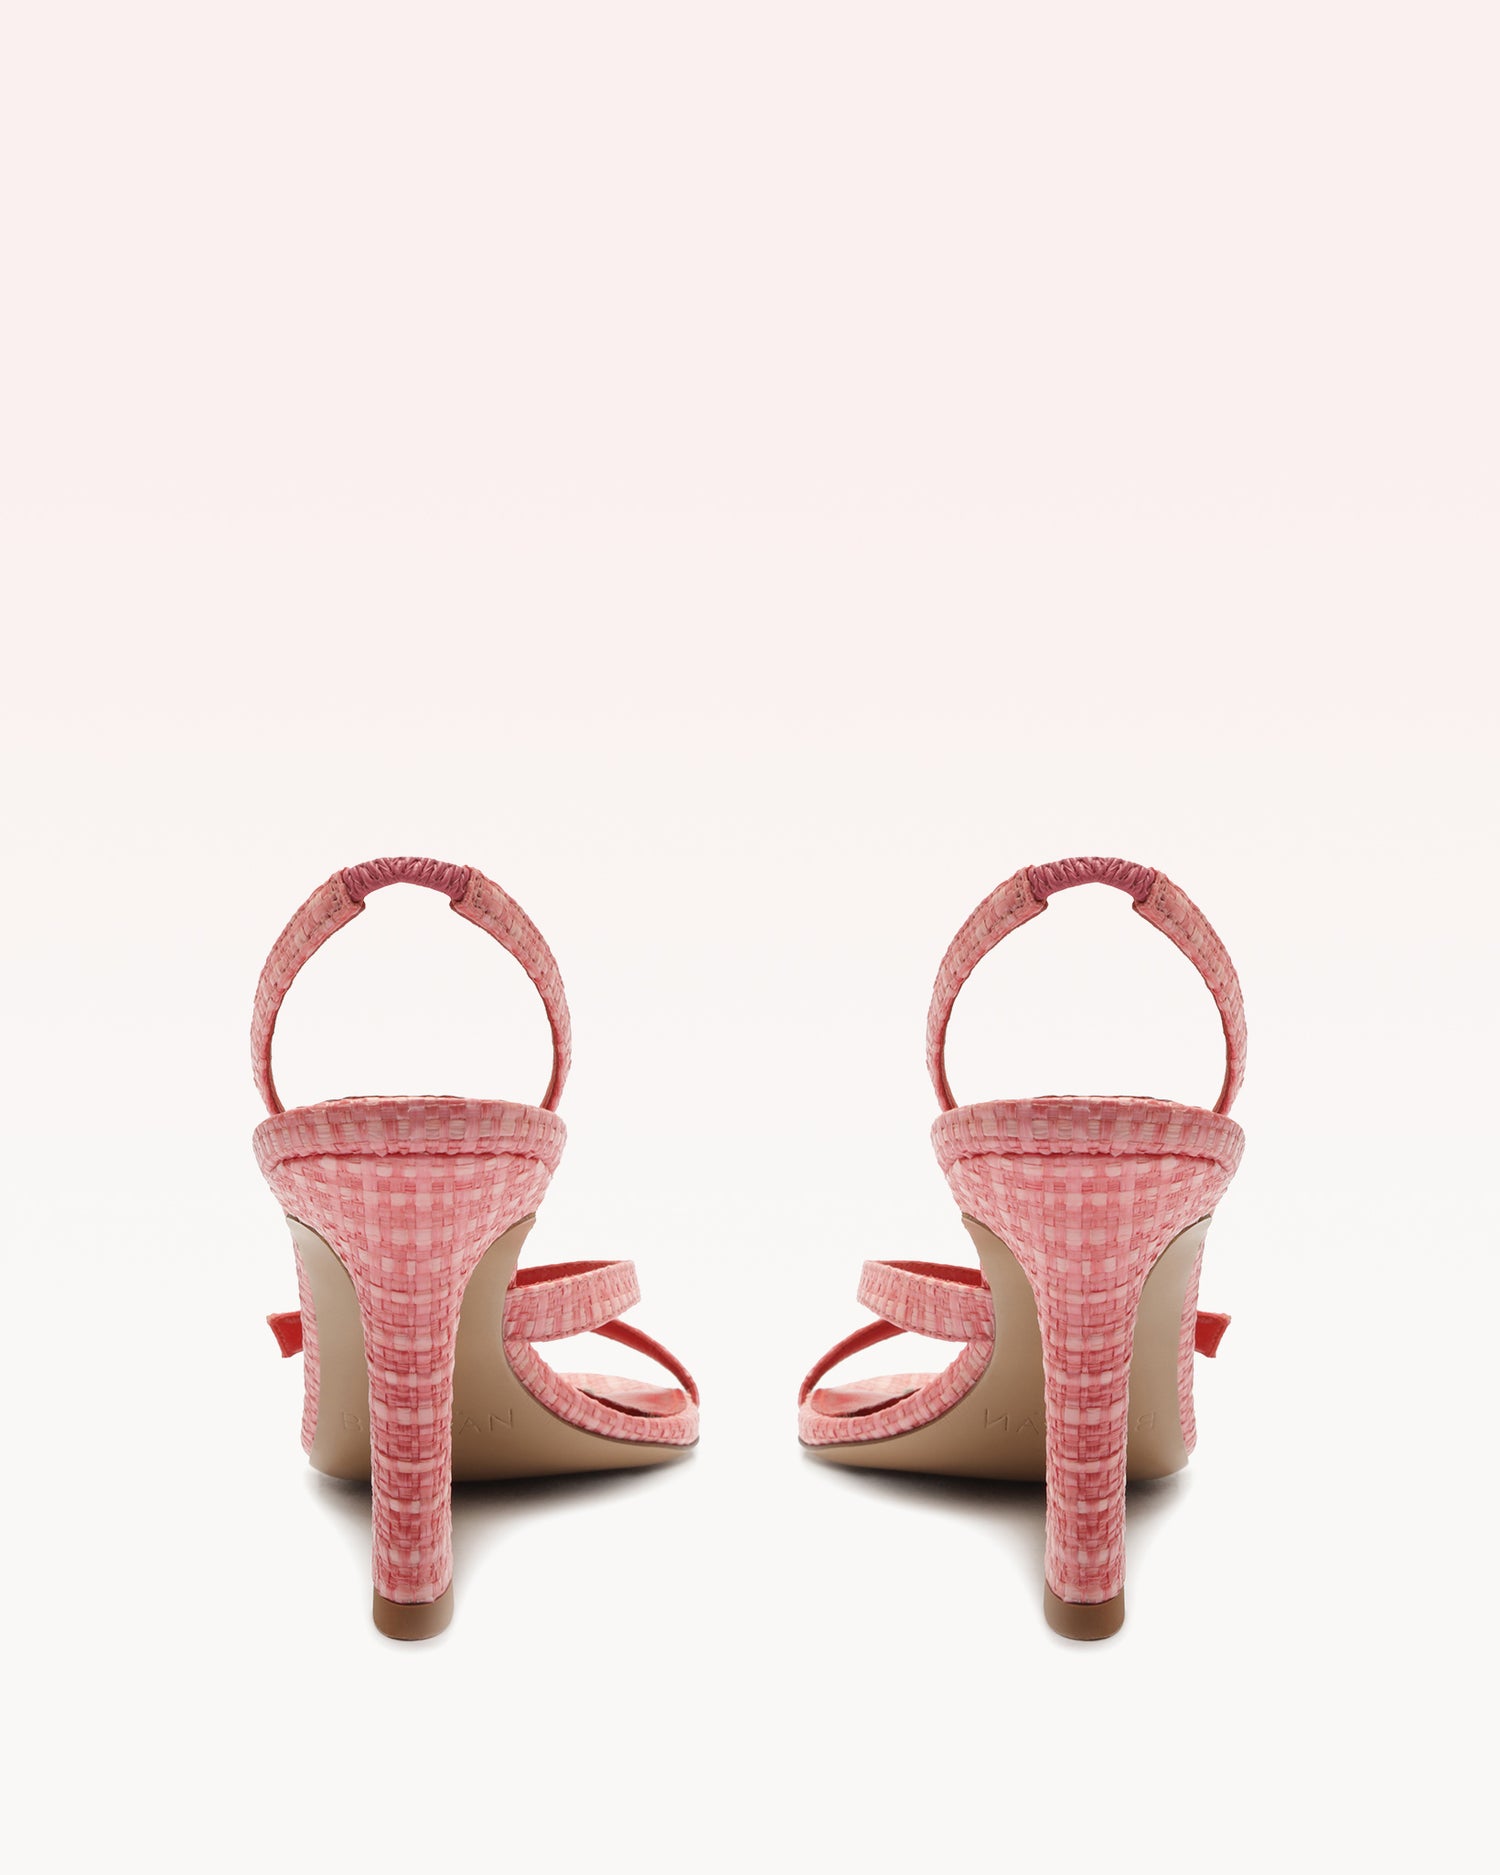 Tita Bell 85 Pink Sandals S/24   